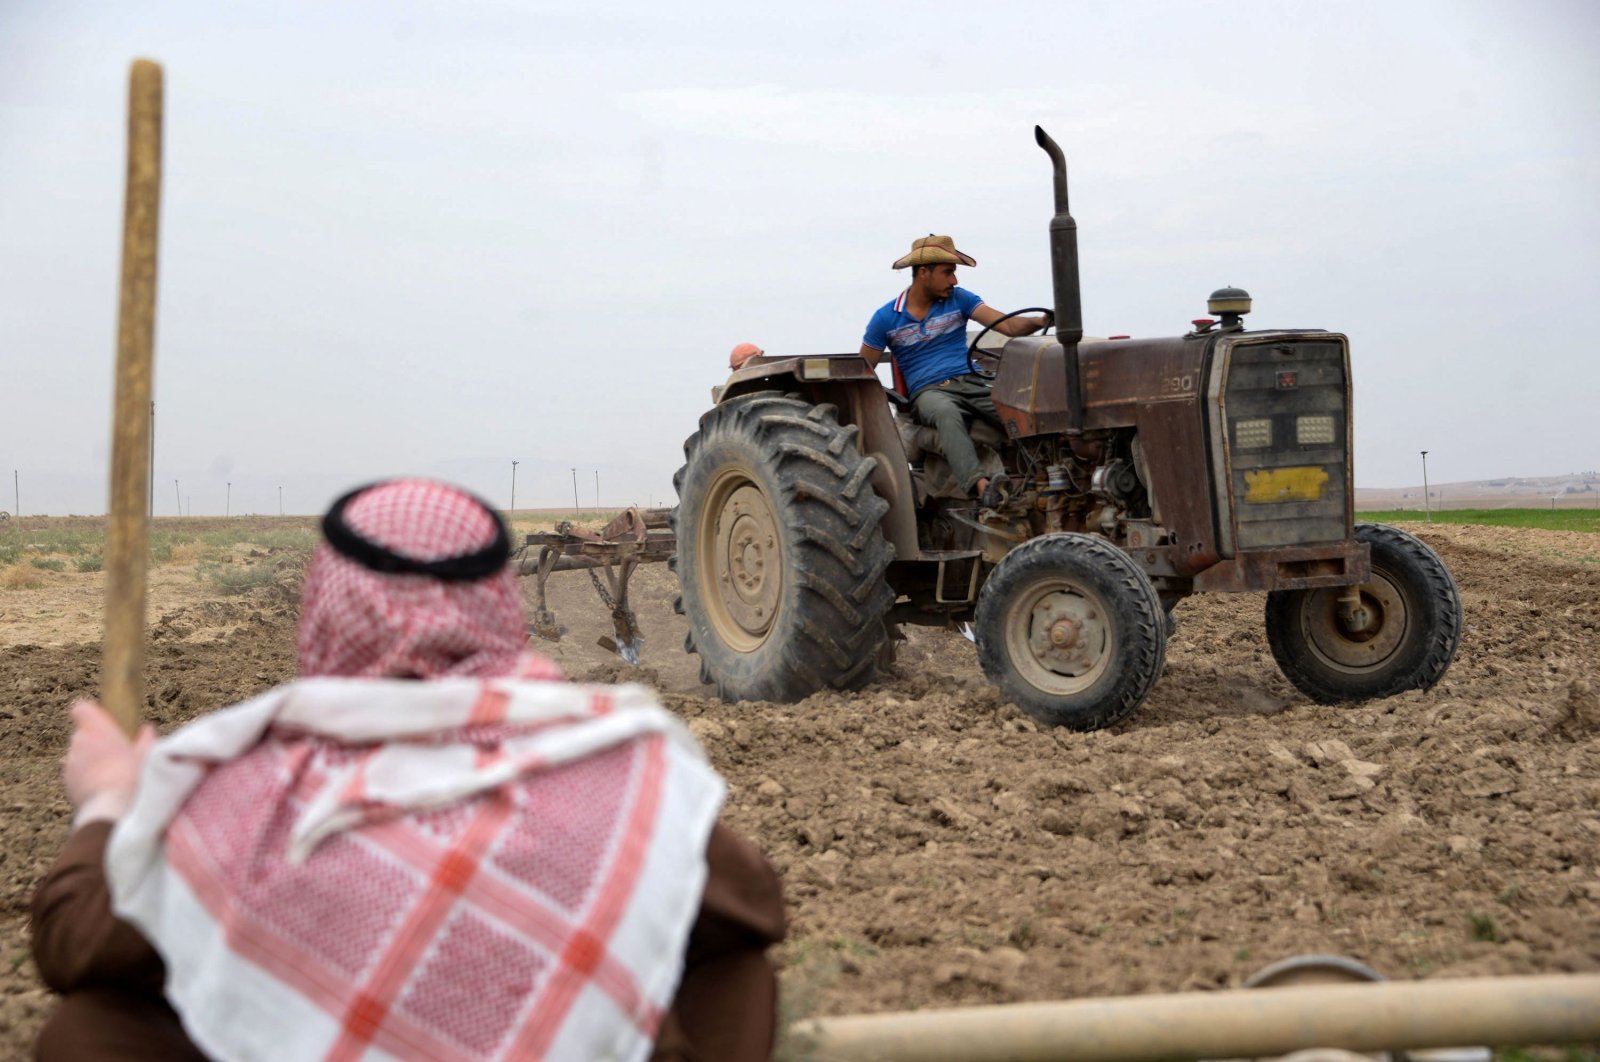 Kekeringan mengancam bencana karena petani Irak terpaksa meninggalkan tanah